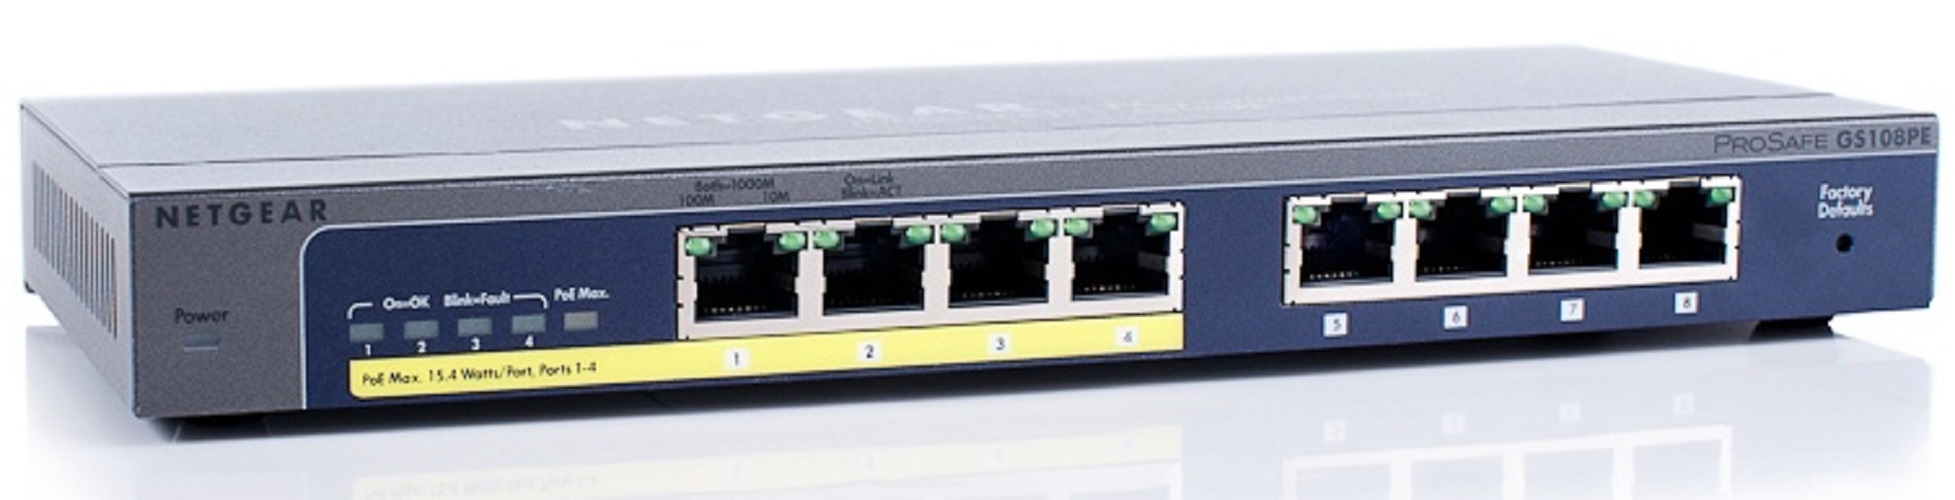 Bộ Chia Mạng Để Bàn 8 Cổng 10/100/1000M Với 4 Cổng PoE Gigabit Ethernet Smart Switch Netgear GS108PE - Hàng Chính Hãng